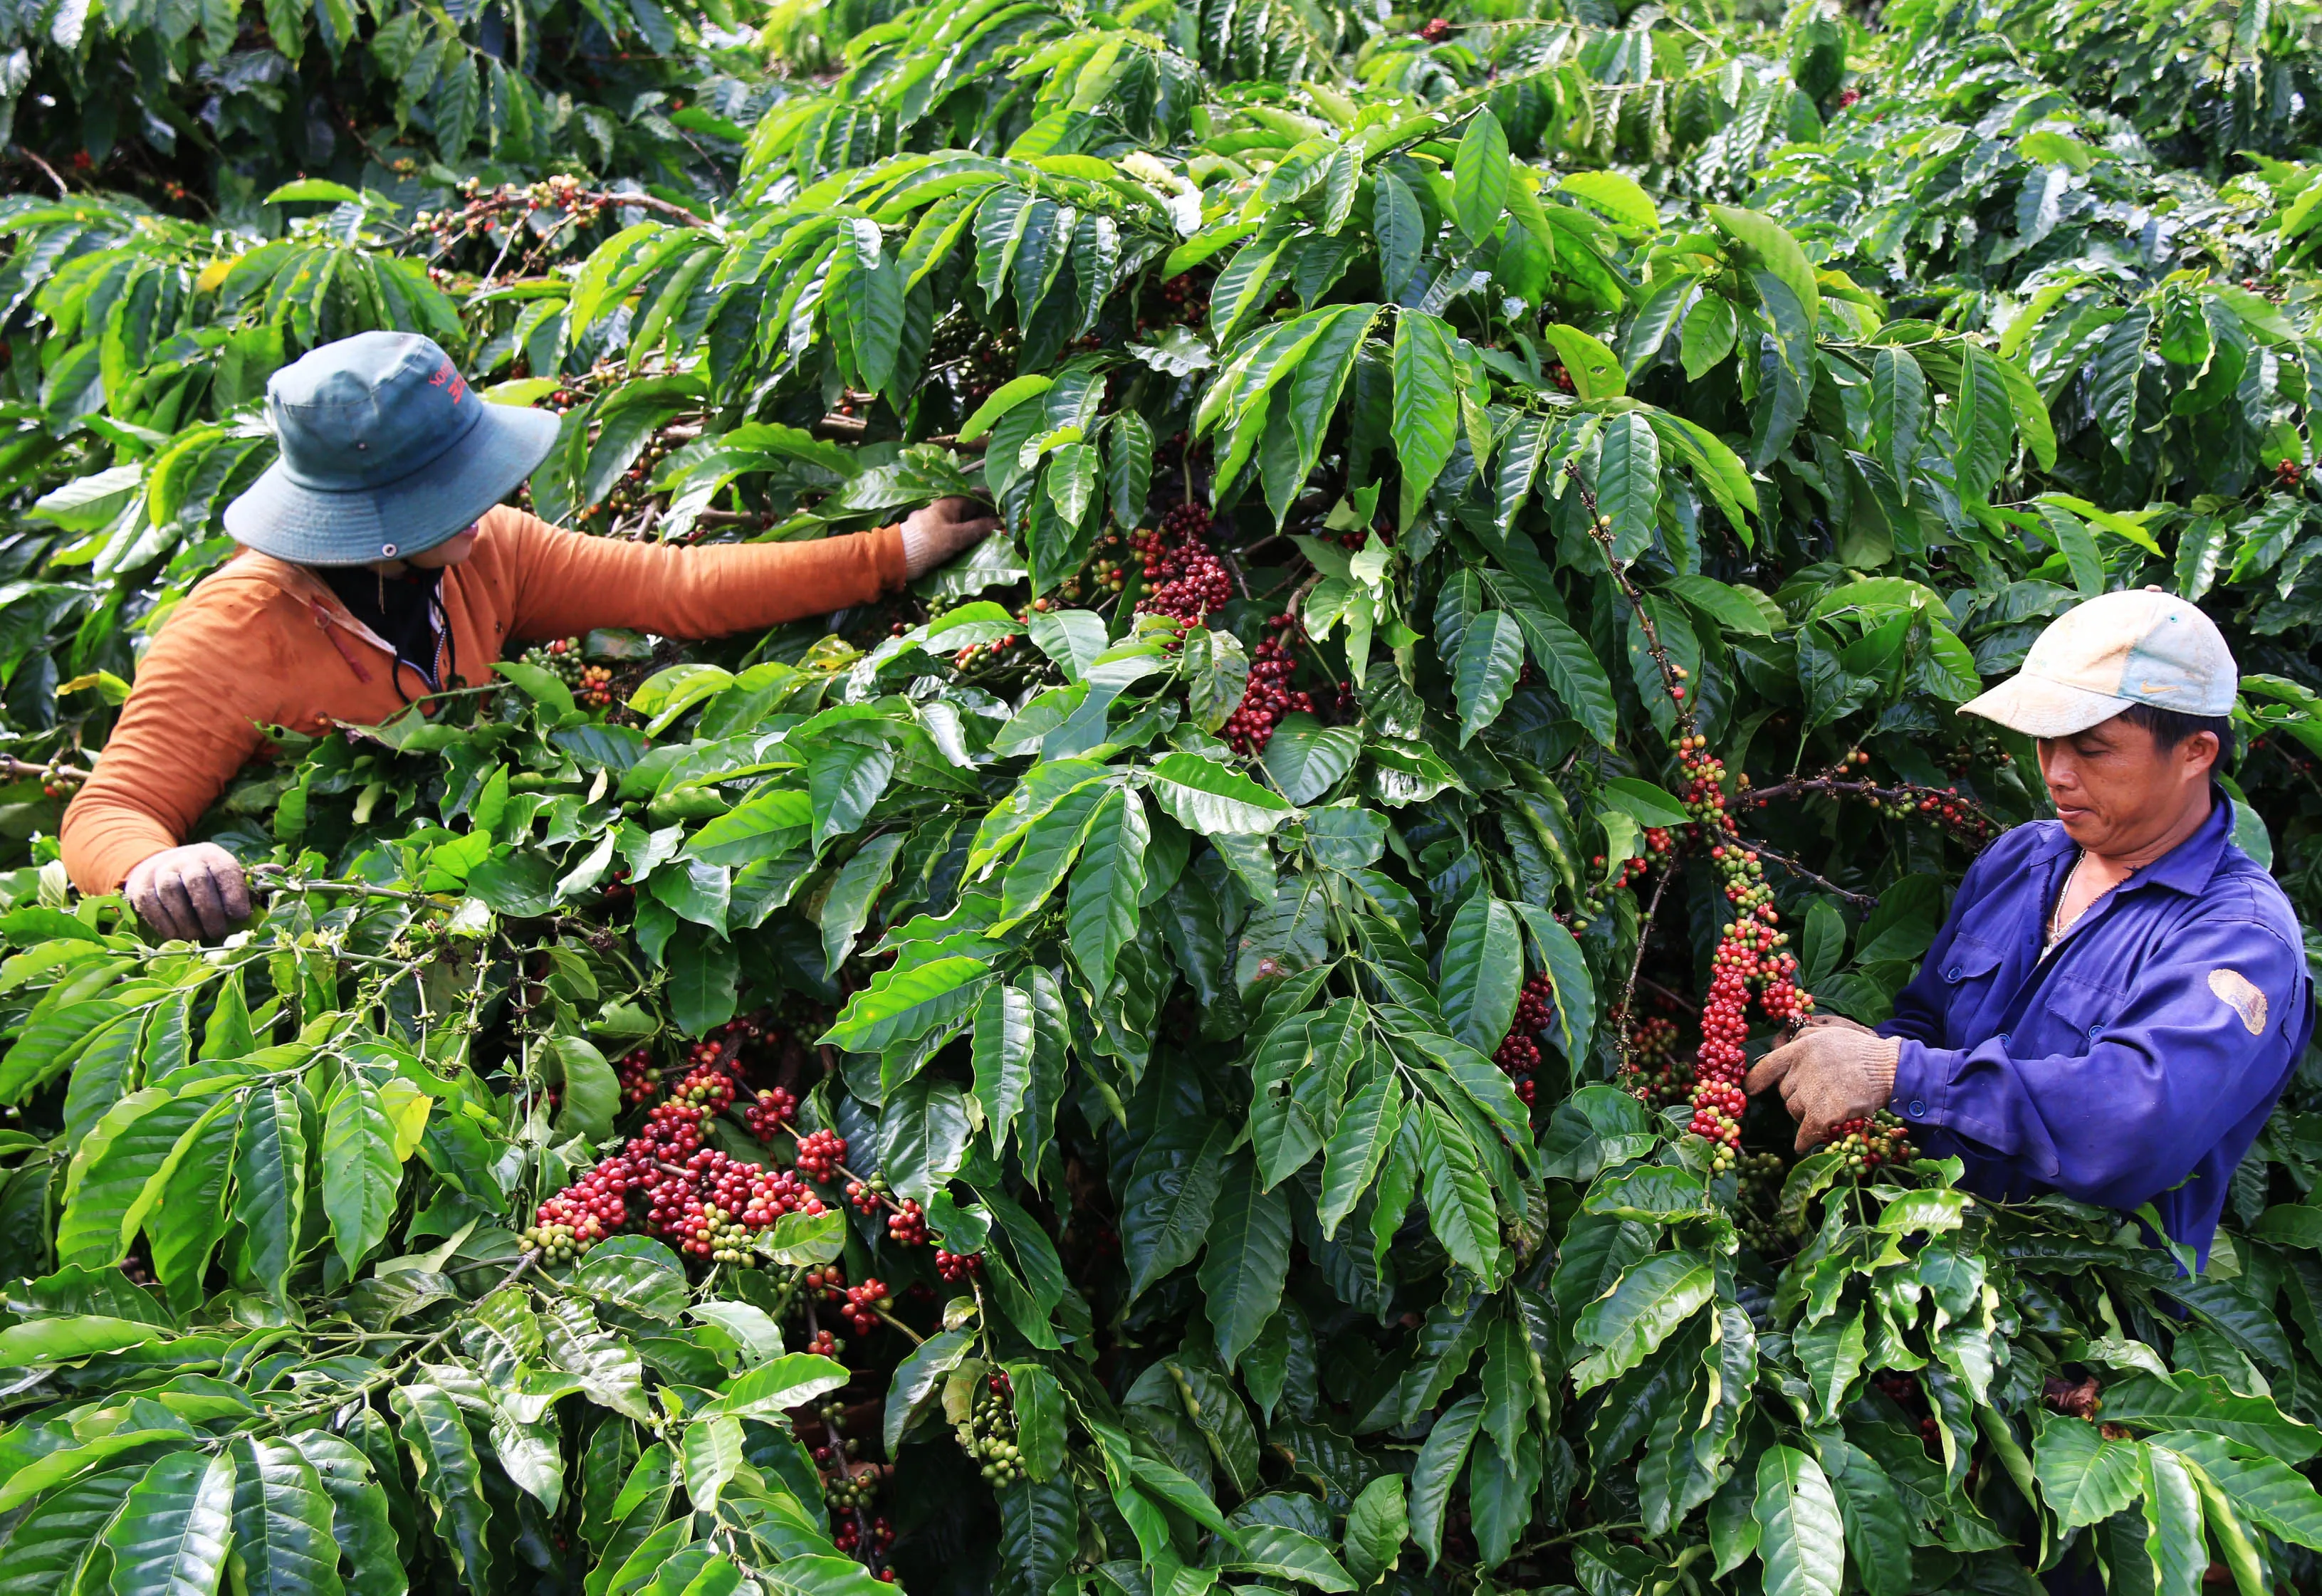 Thưởng thức cà phê ở Tây Nguyên nơi trồng nhiều cà phê nhất Việt Nam